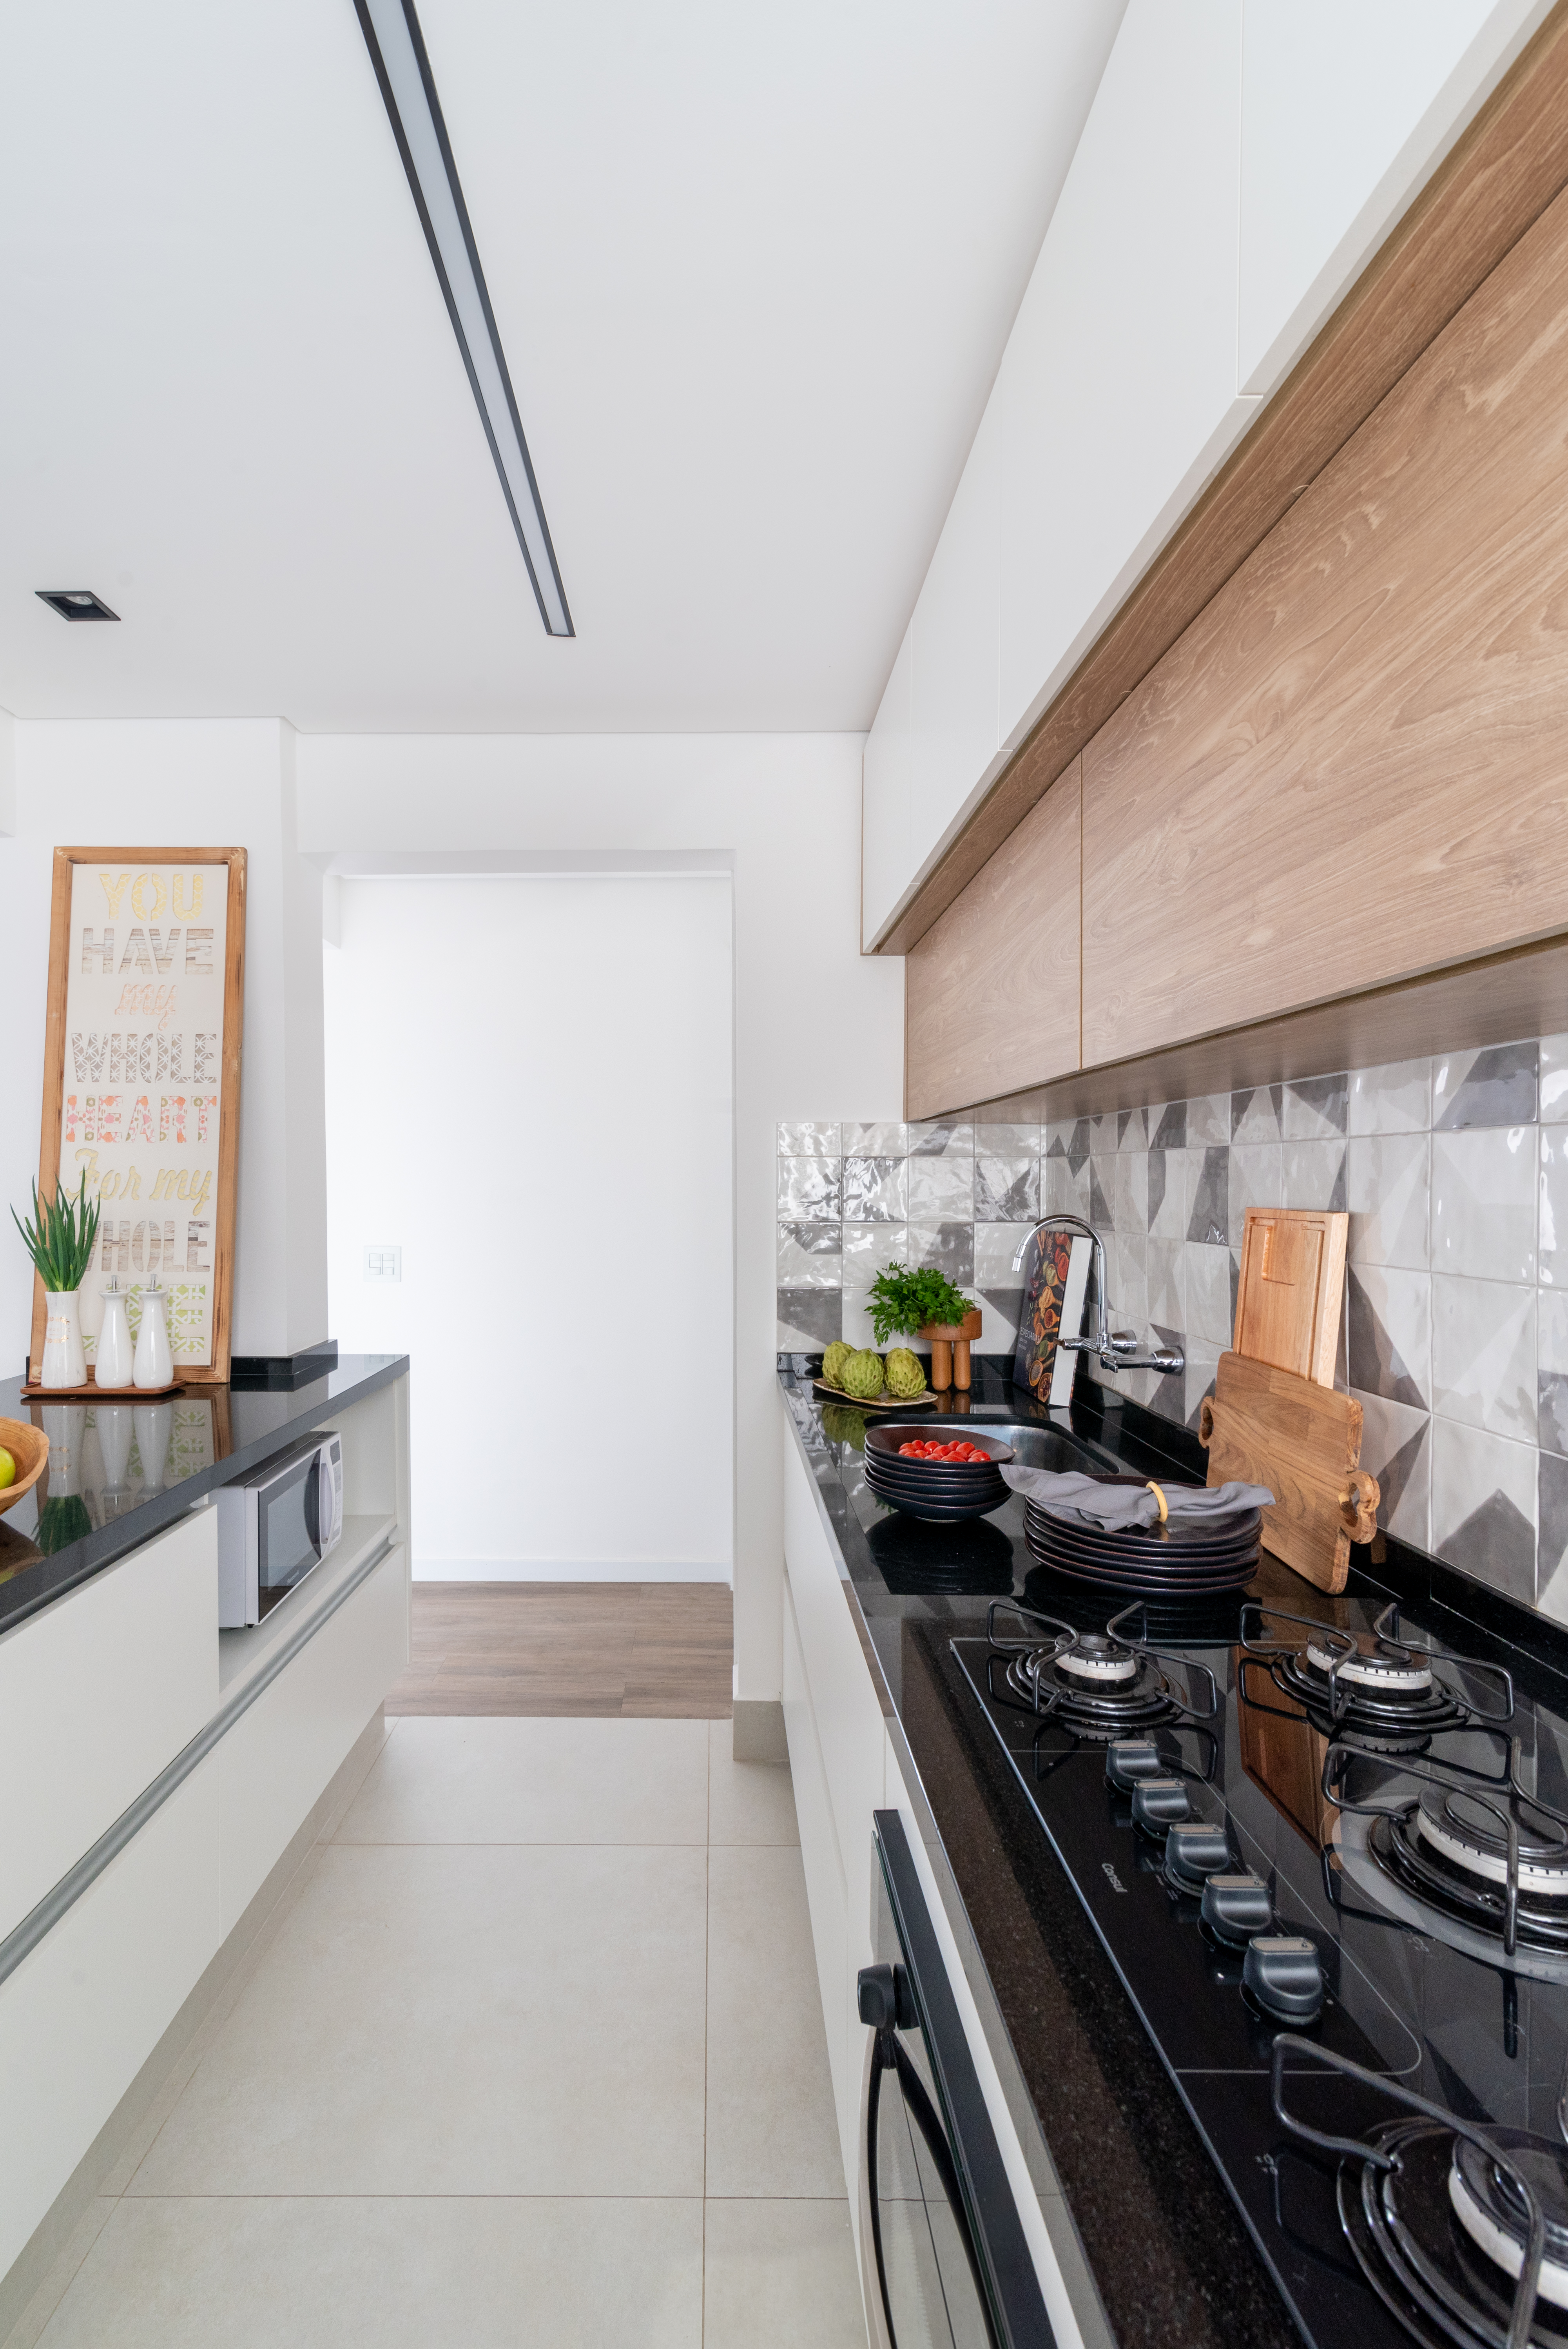 Projeto de Isabella Nalon. Na foto, cozinha integrada com bancada preta e backsplash de azulejos geométricos.